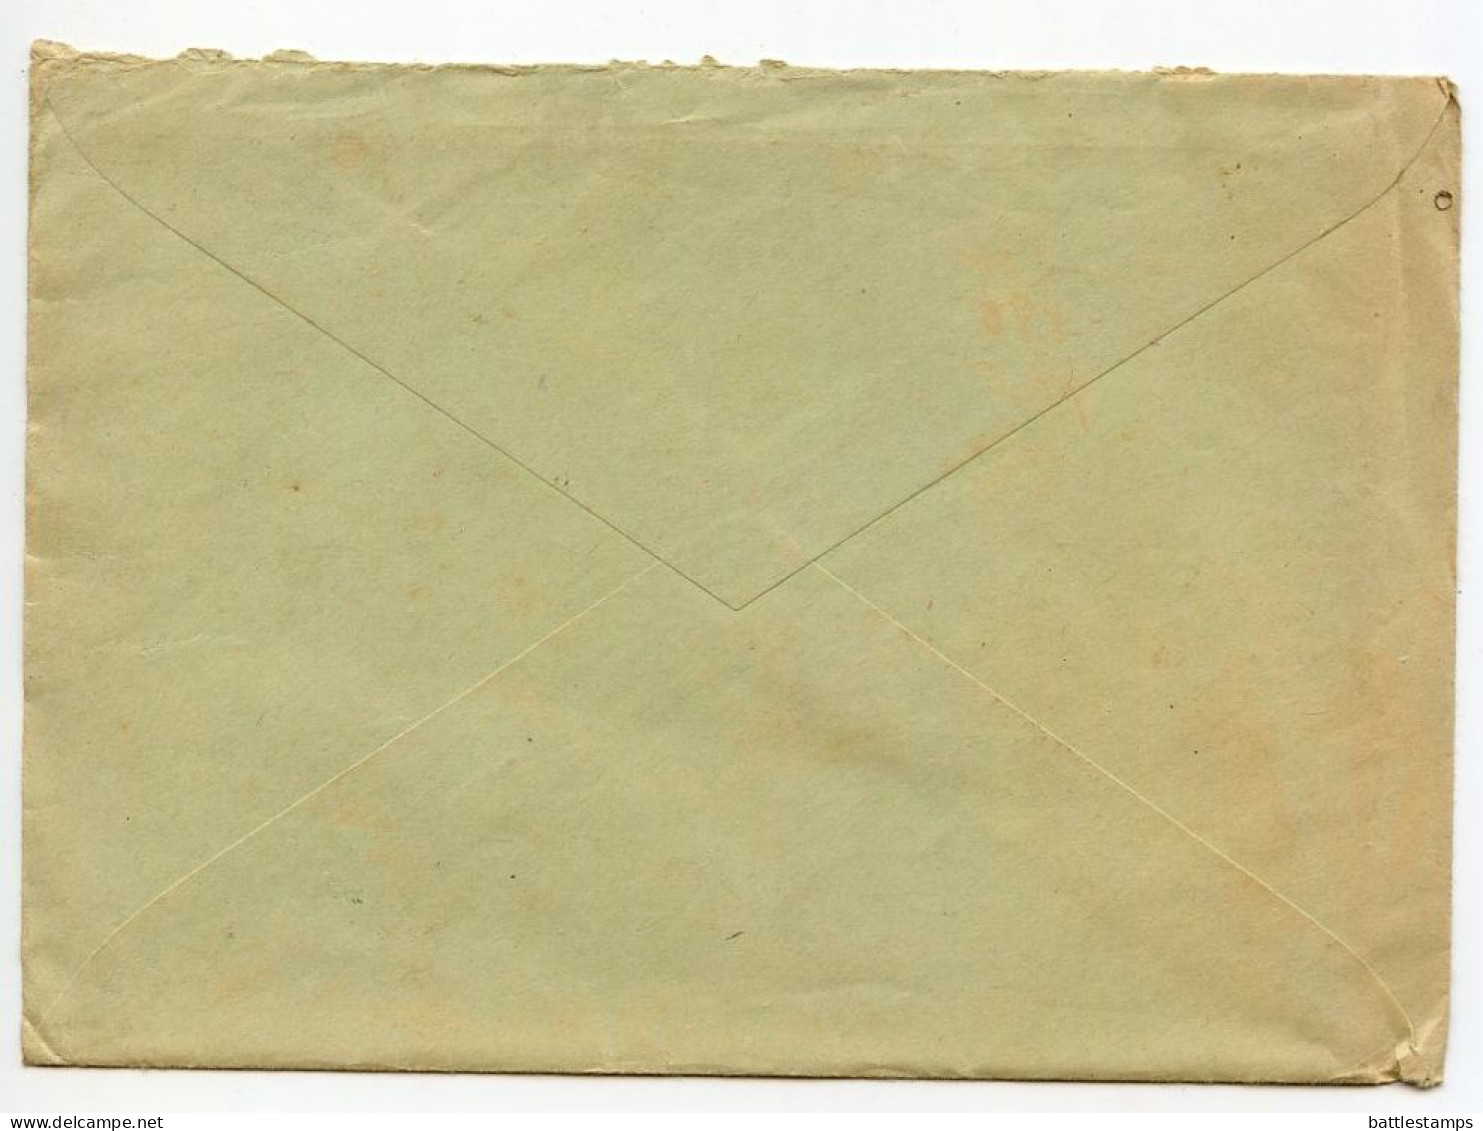 Germany 1936 Cover & Letter; Duisburg-Hamborn - C Schnier To Schiplage; 12pf Hindenburg; Luftschutzpflicht Slogan Cancel - Covers & Documents